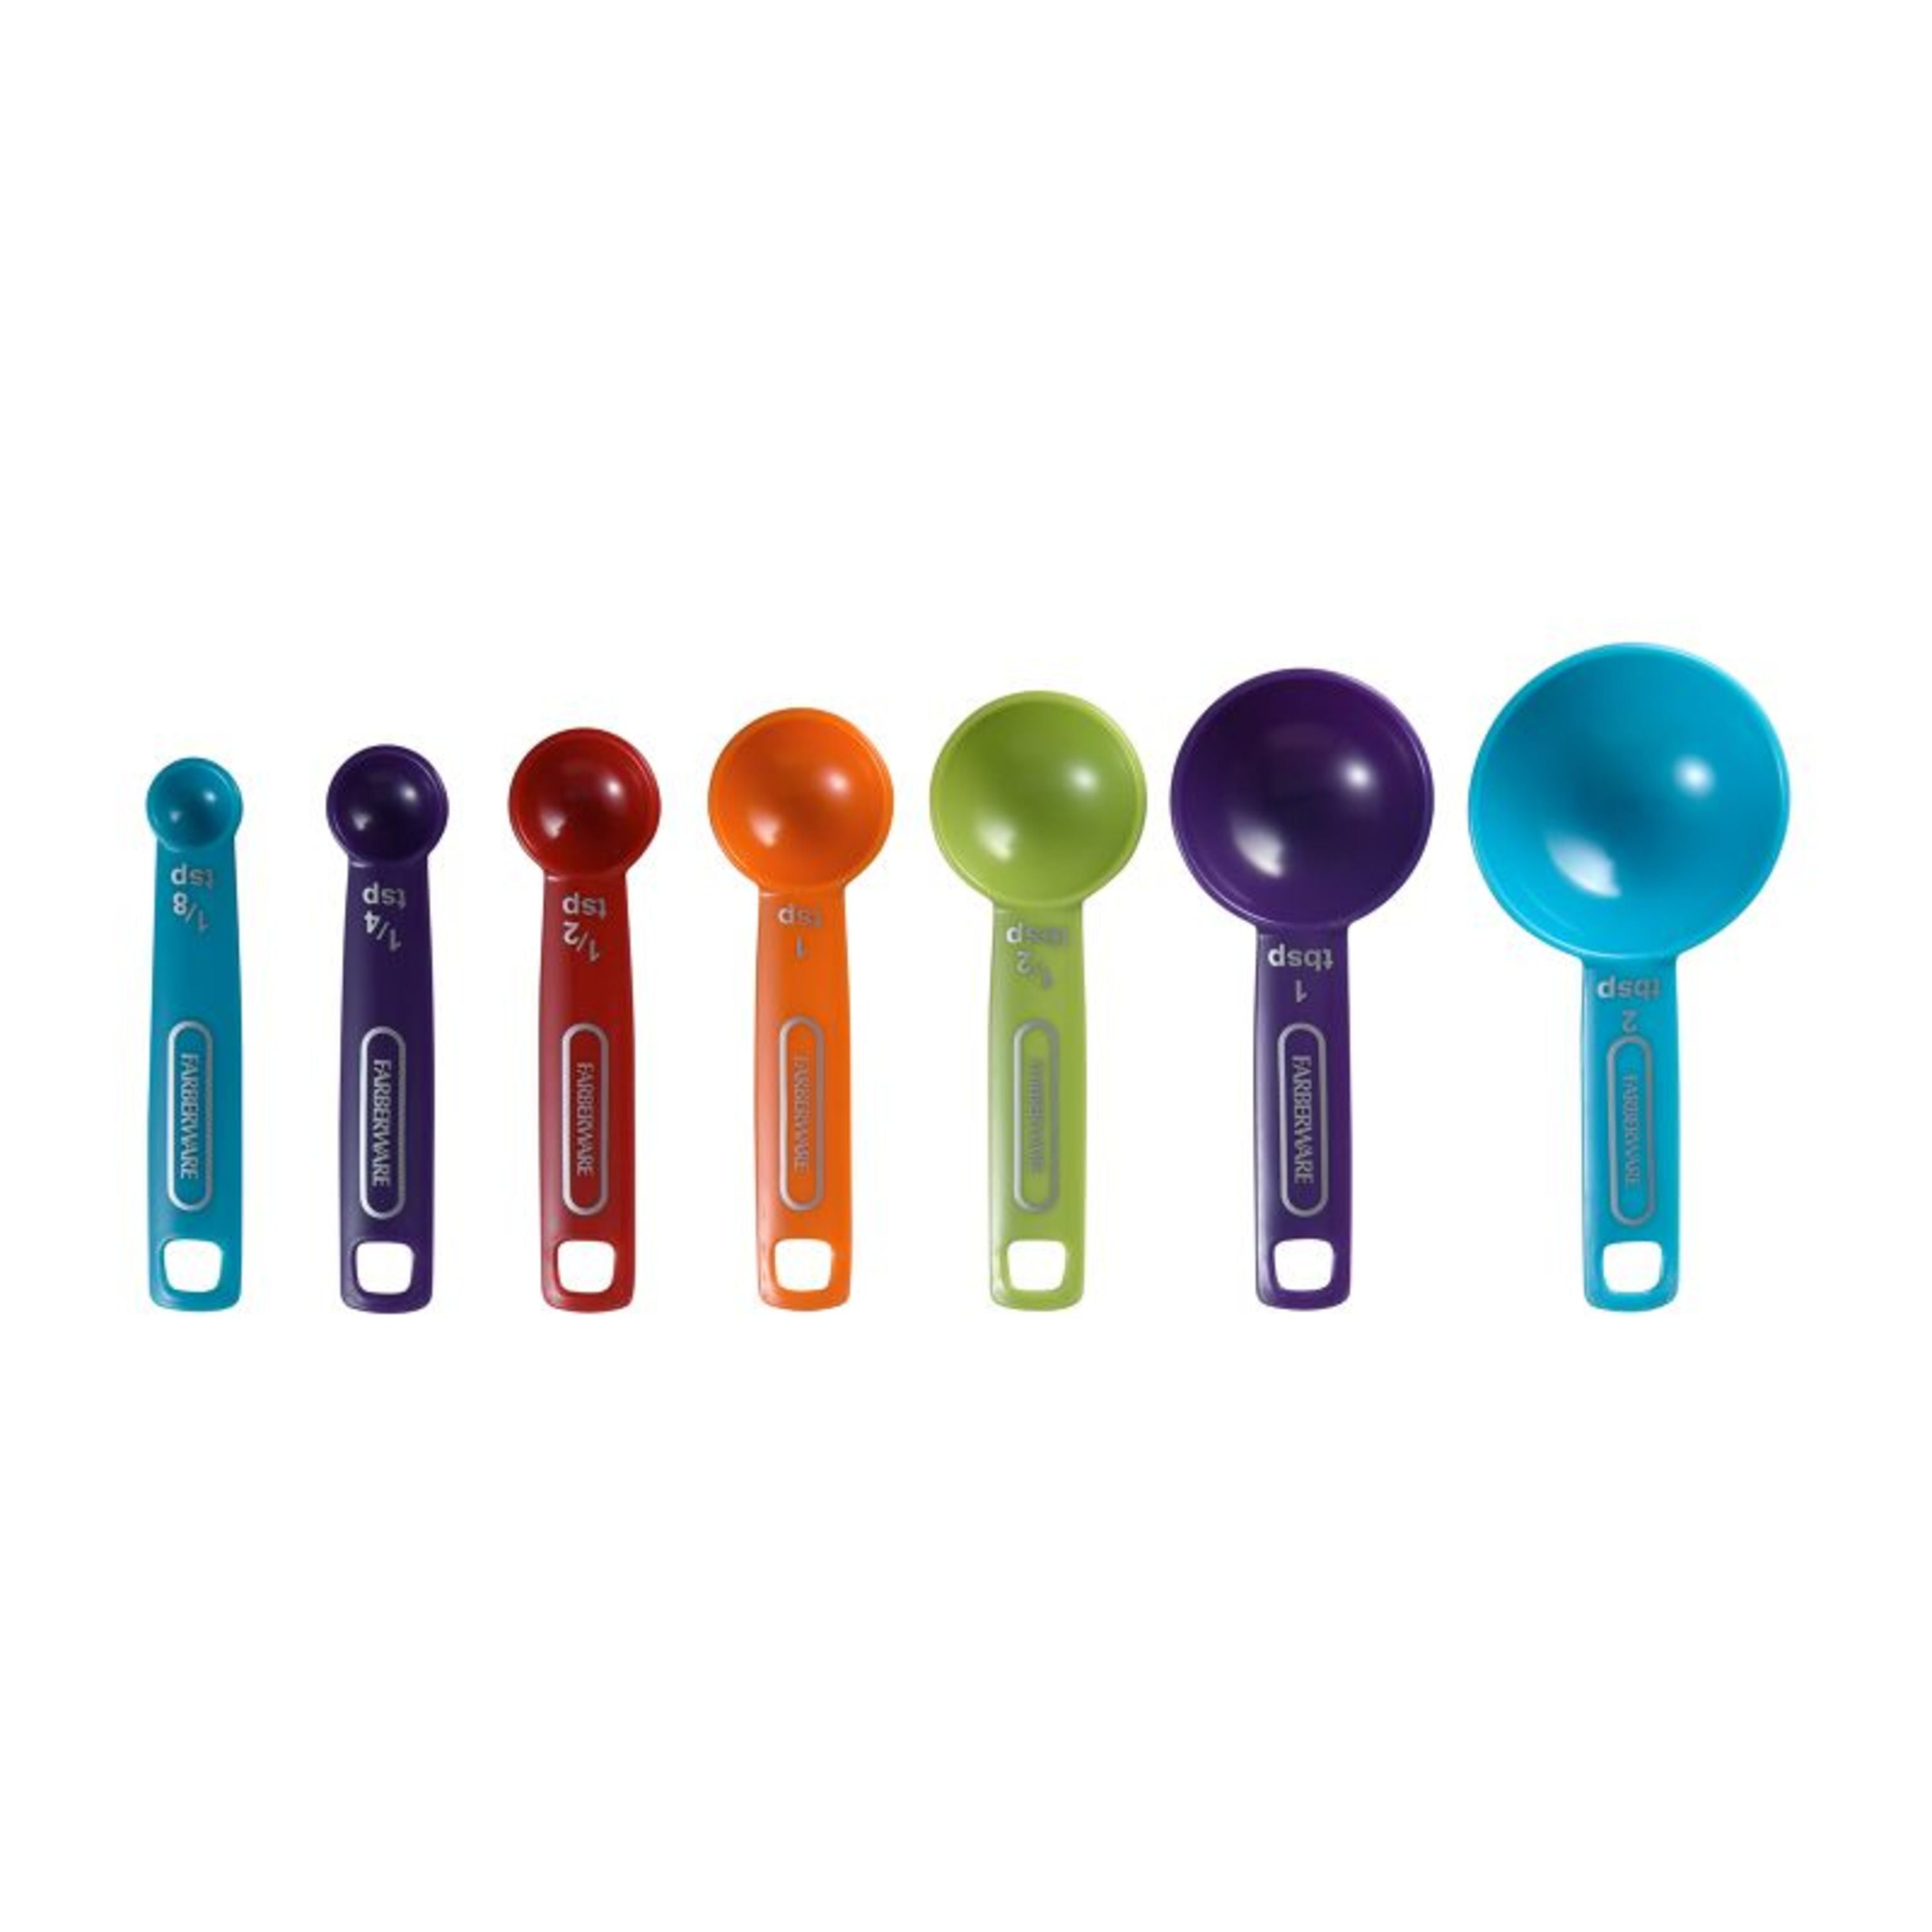 Farberware Plastic Professional 7-piece Multi-Colored Measuring